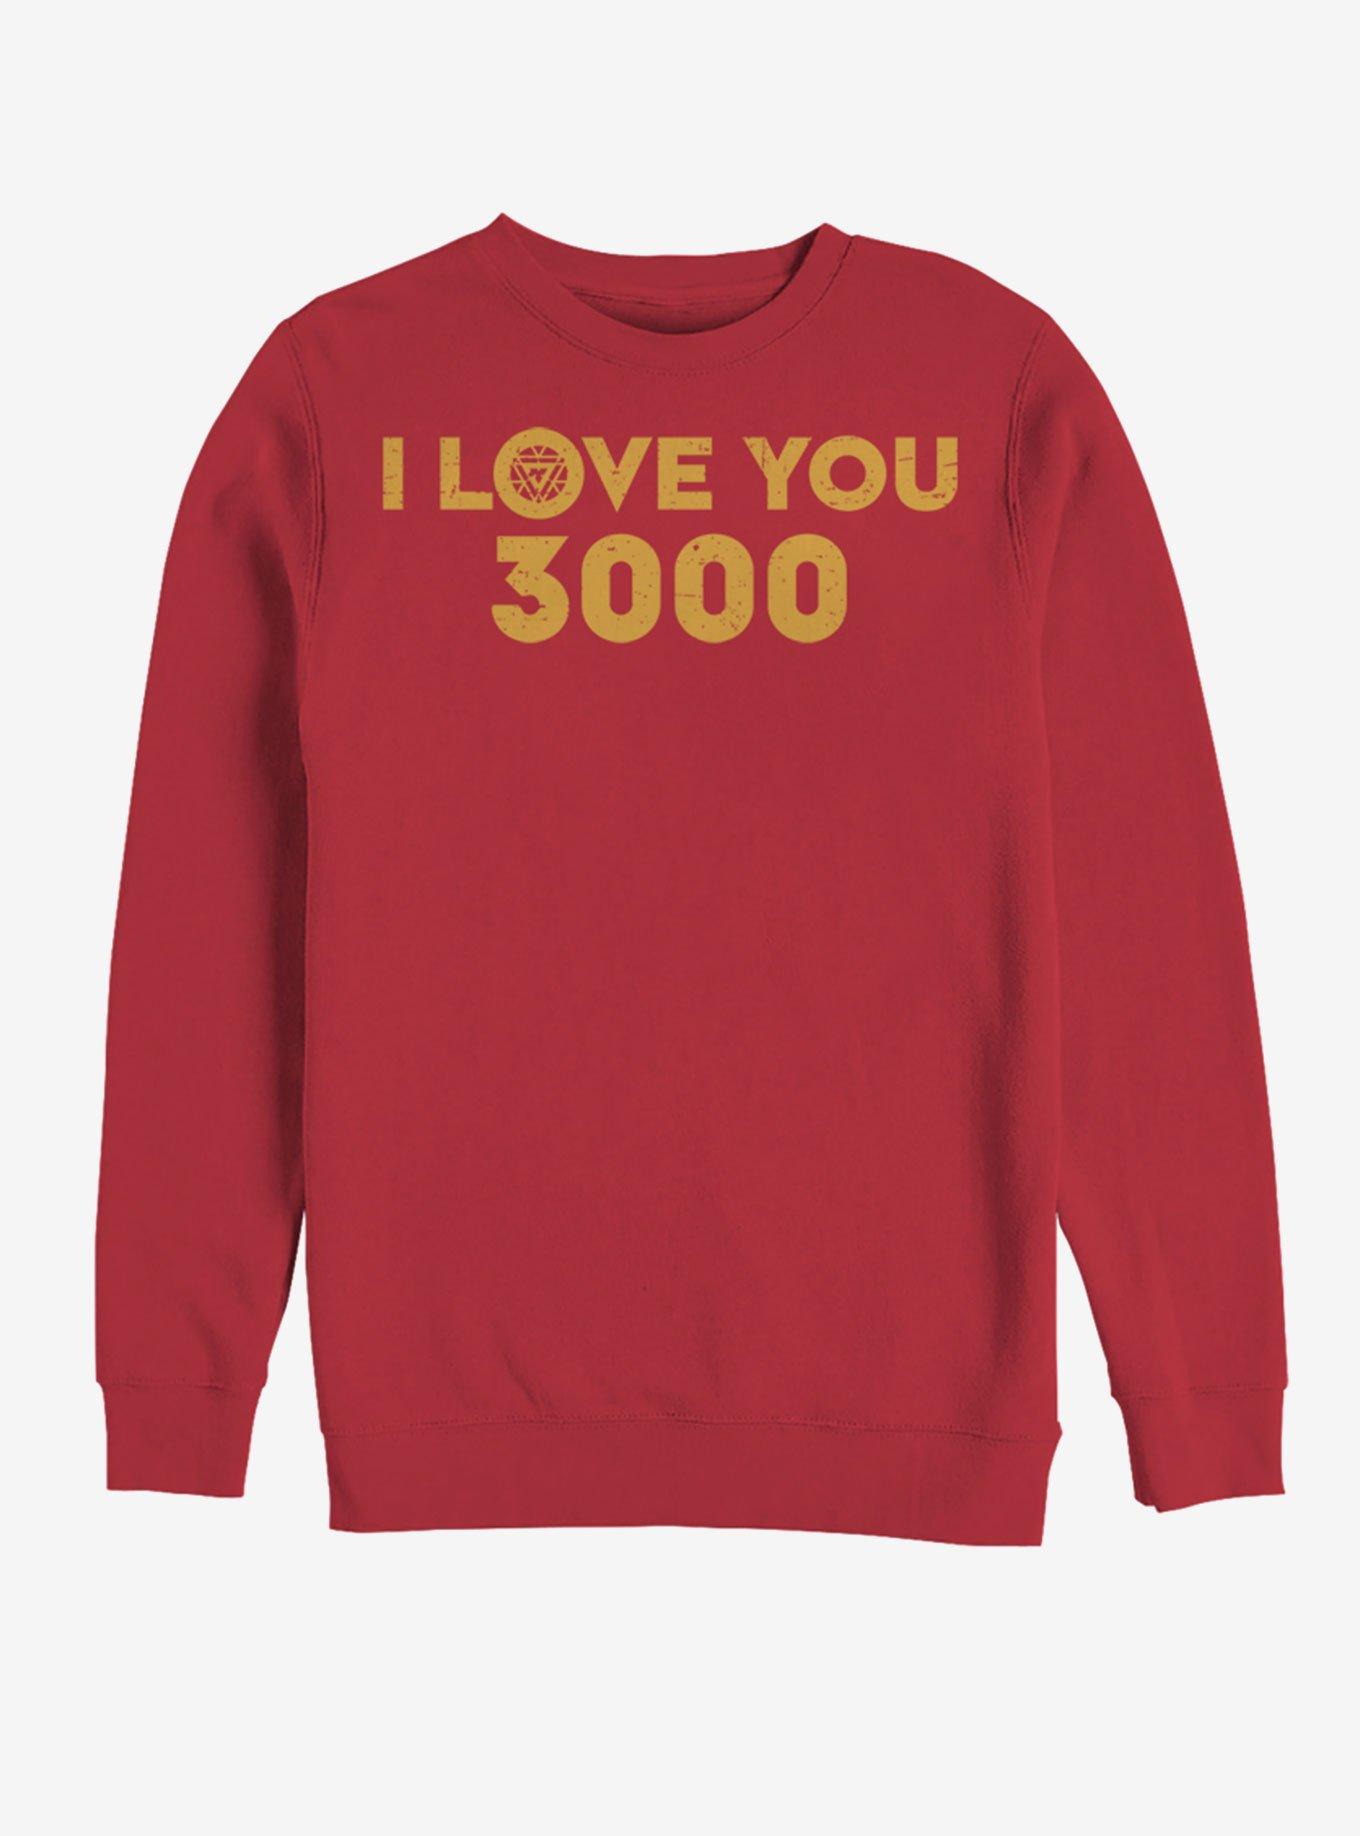 Marvel Avengers: Endgame Love 3000 Sweatshirt - RED | Hot Topic